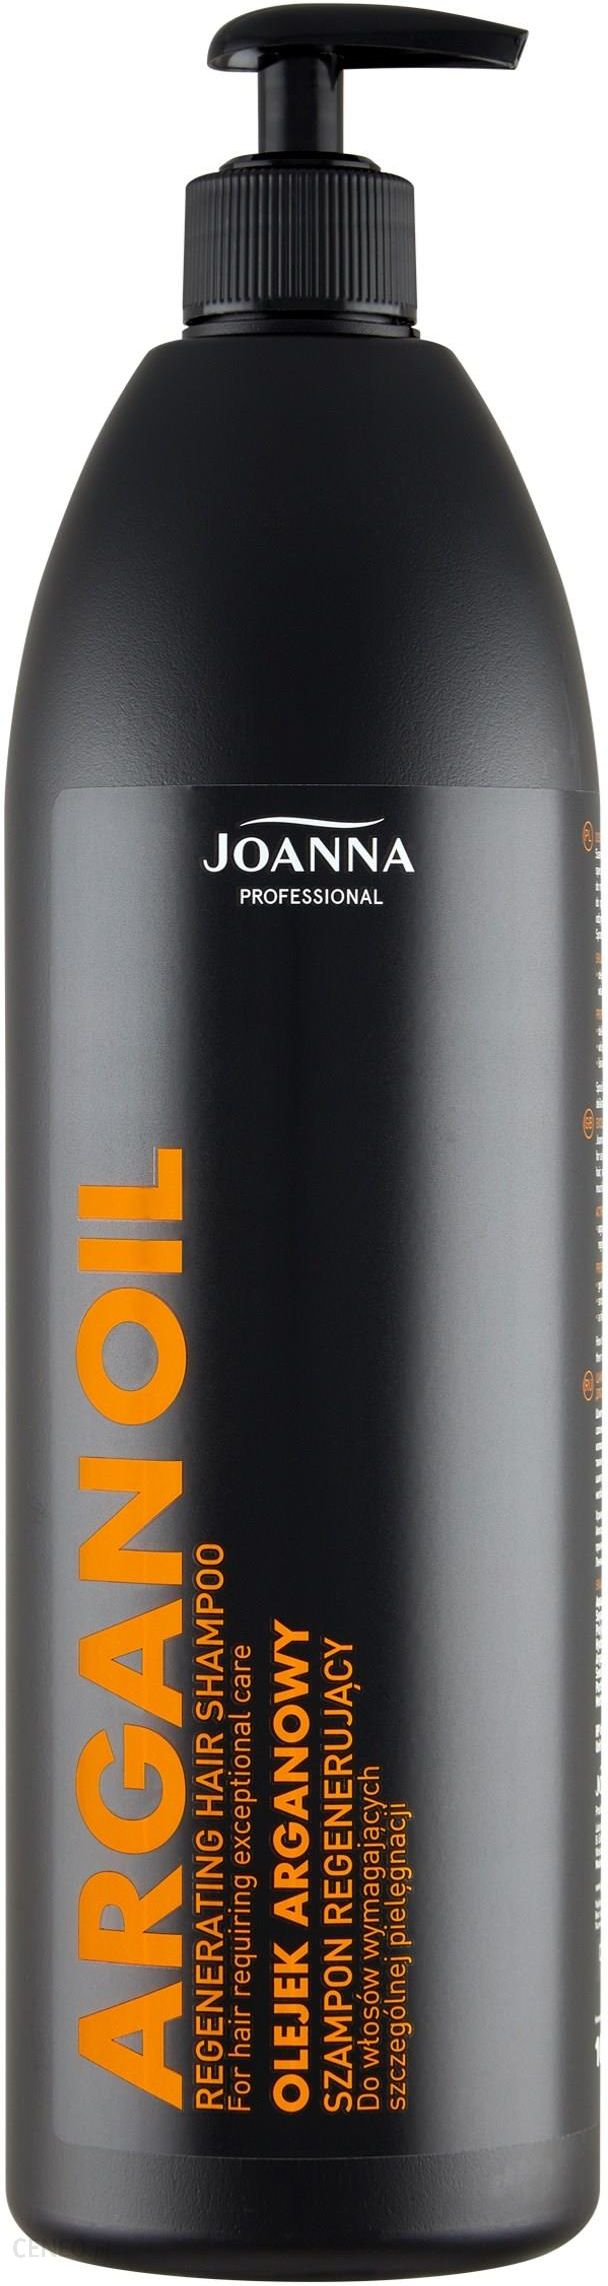 szampon joanna professional z olejkiem arganowym